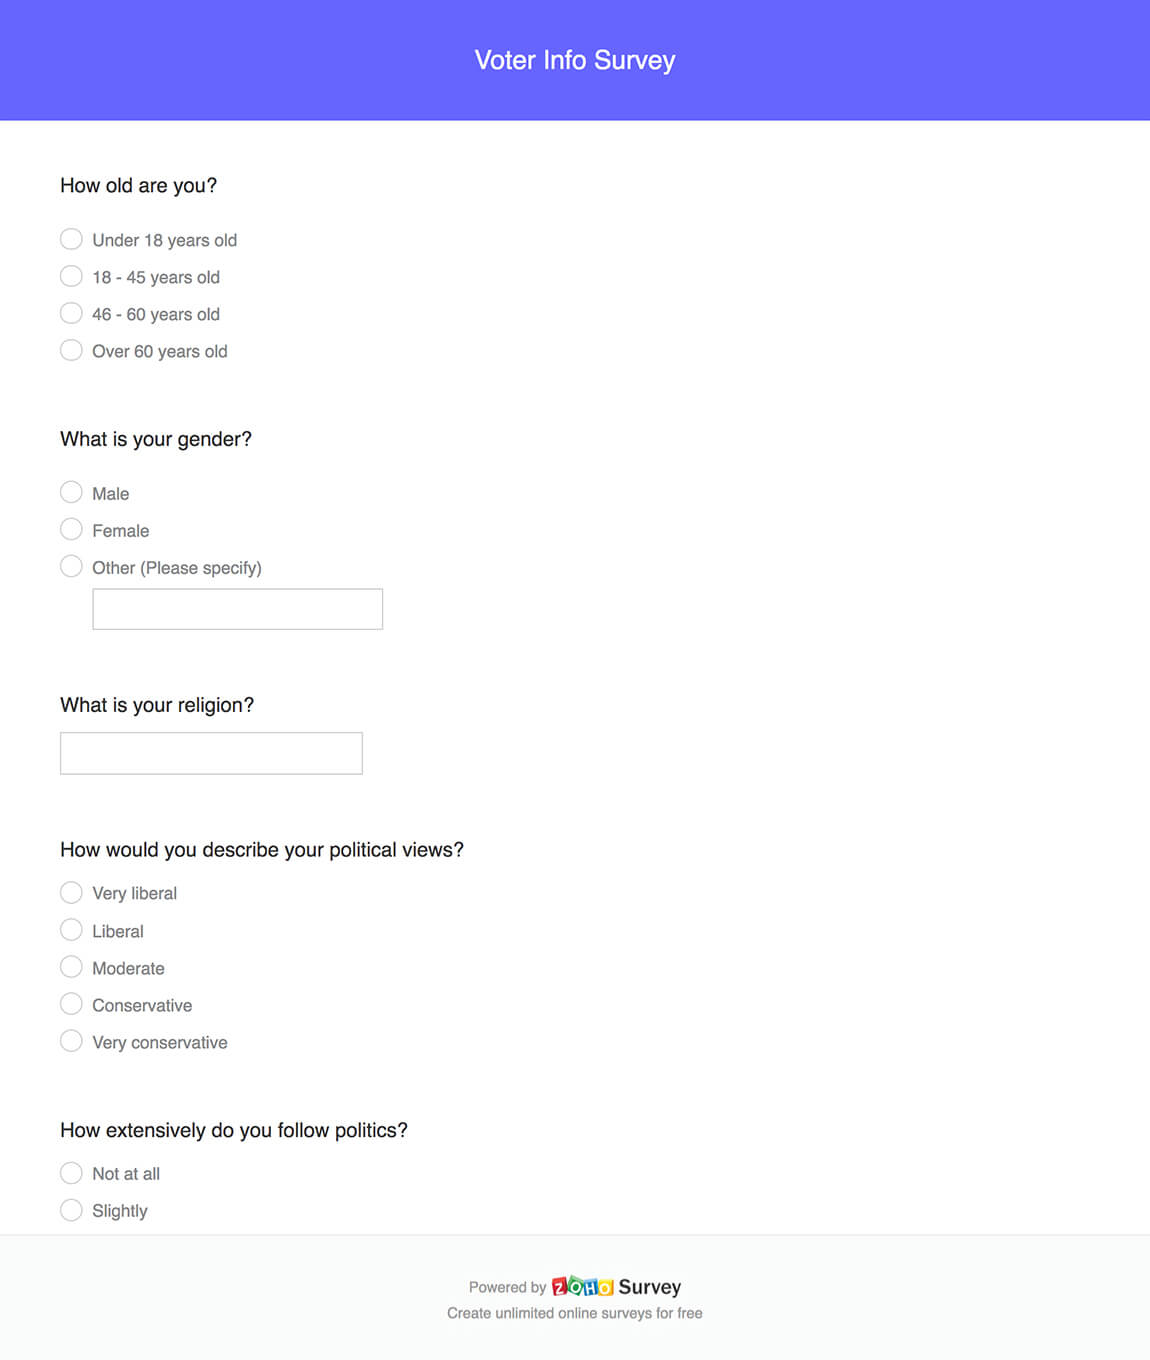 Voter info survey questionnaire template